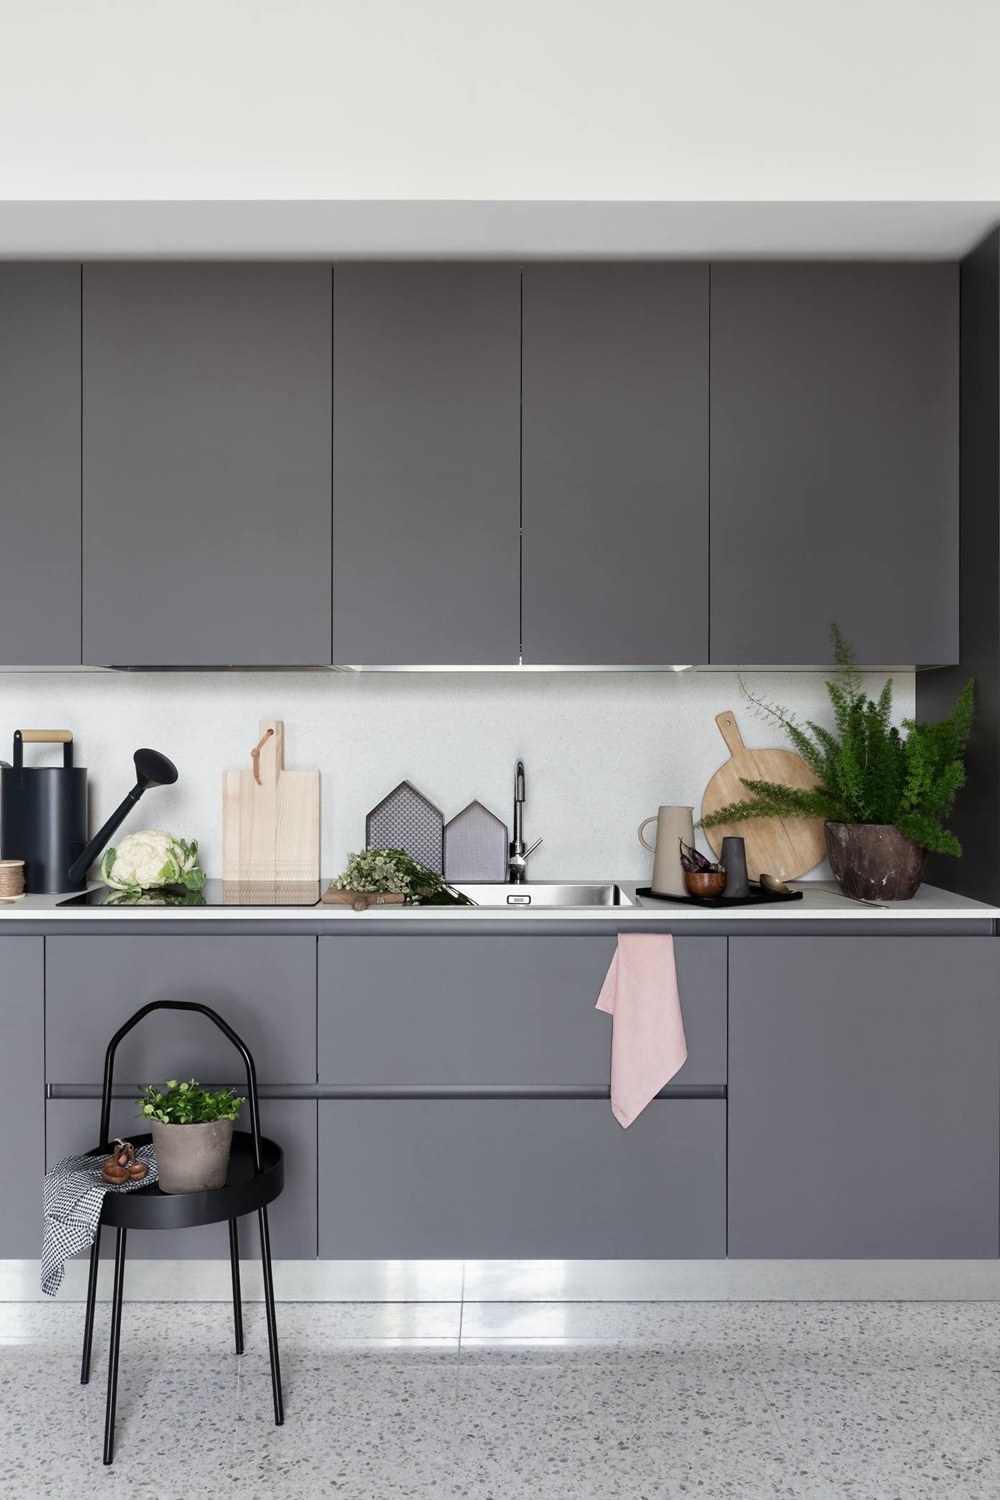 厨房空间利用对比色设计，灰色橱柜搭配白色背景，又有层次又前卫十足。